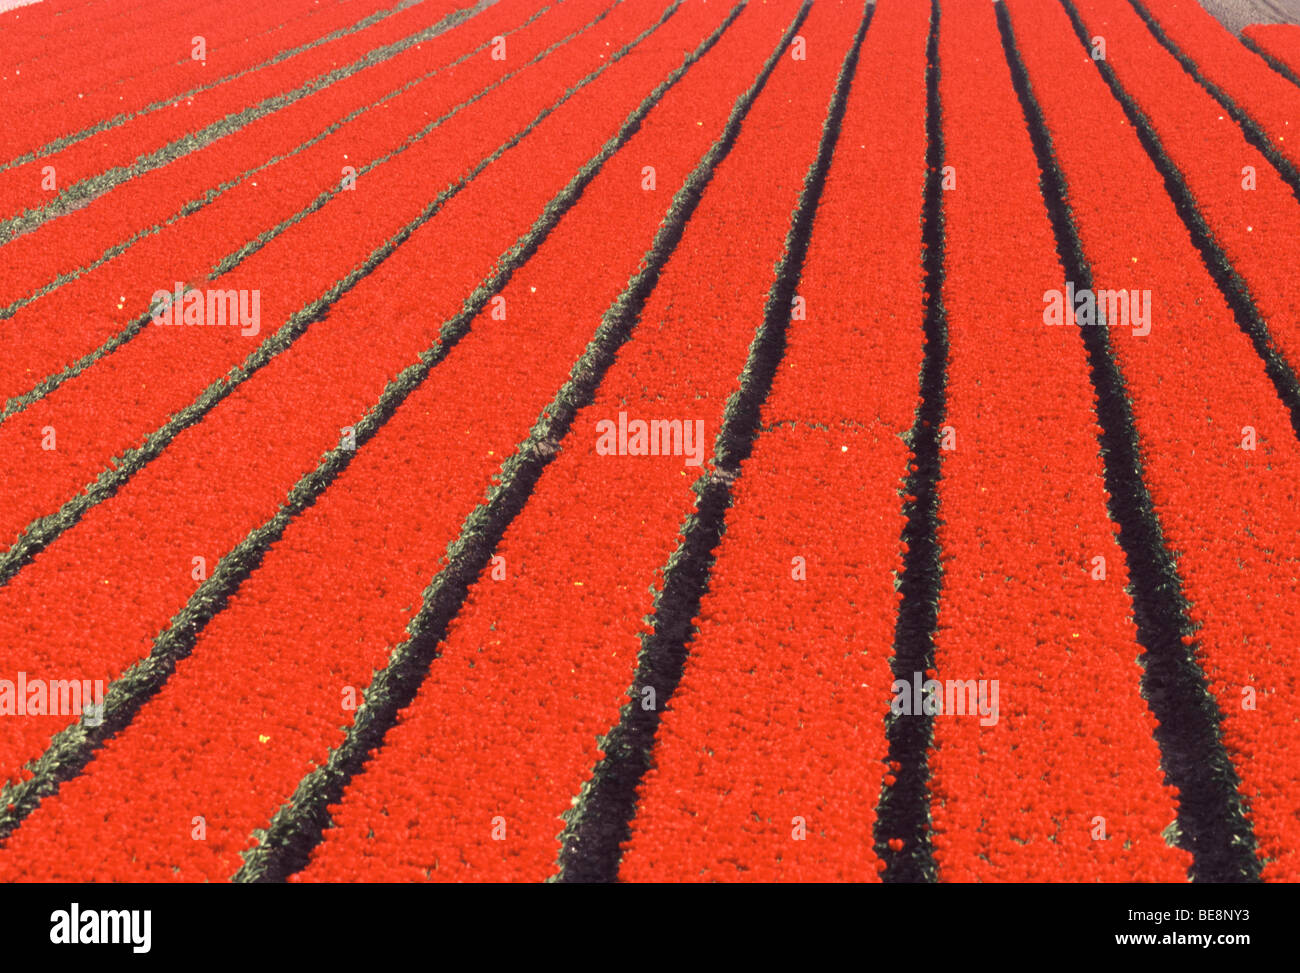 Tulpenveld (Tulipa sp.), Nederland champ de tulipes (Tulipa sp.), les Pays-Bas Banque D'Images